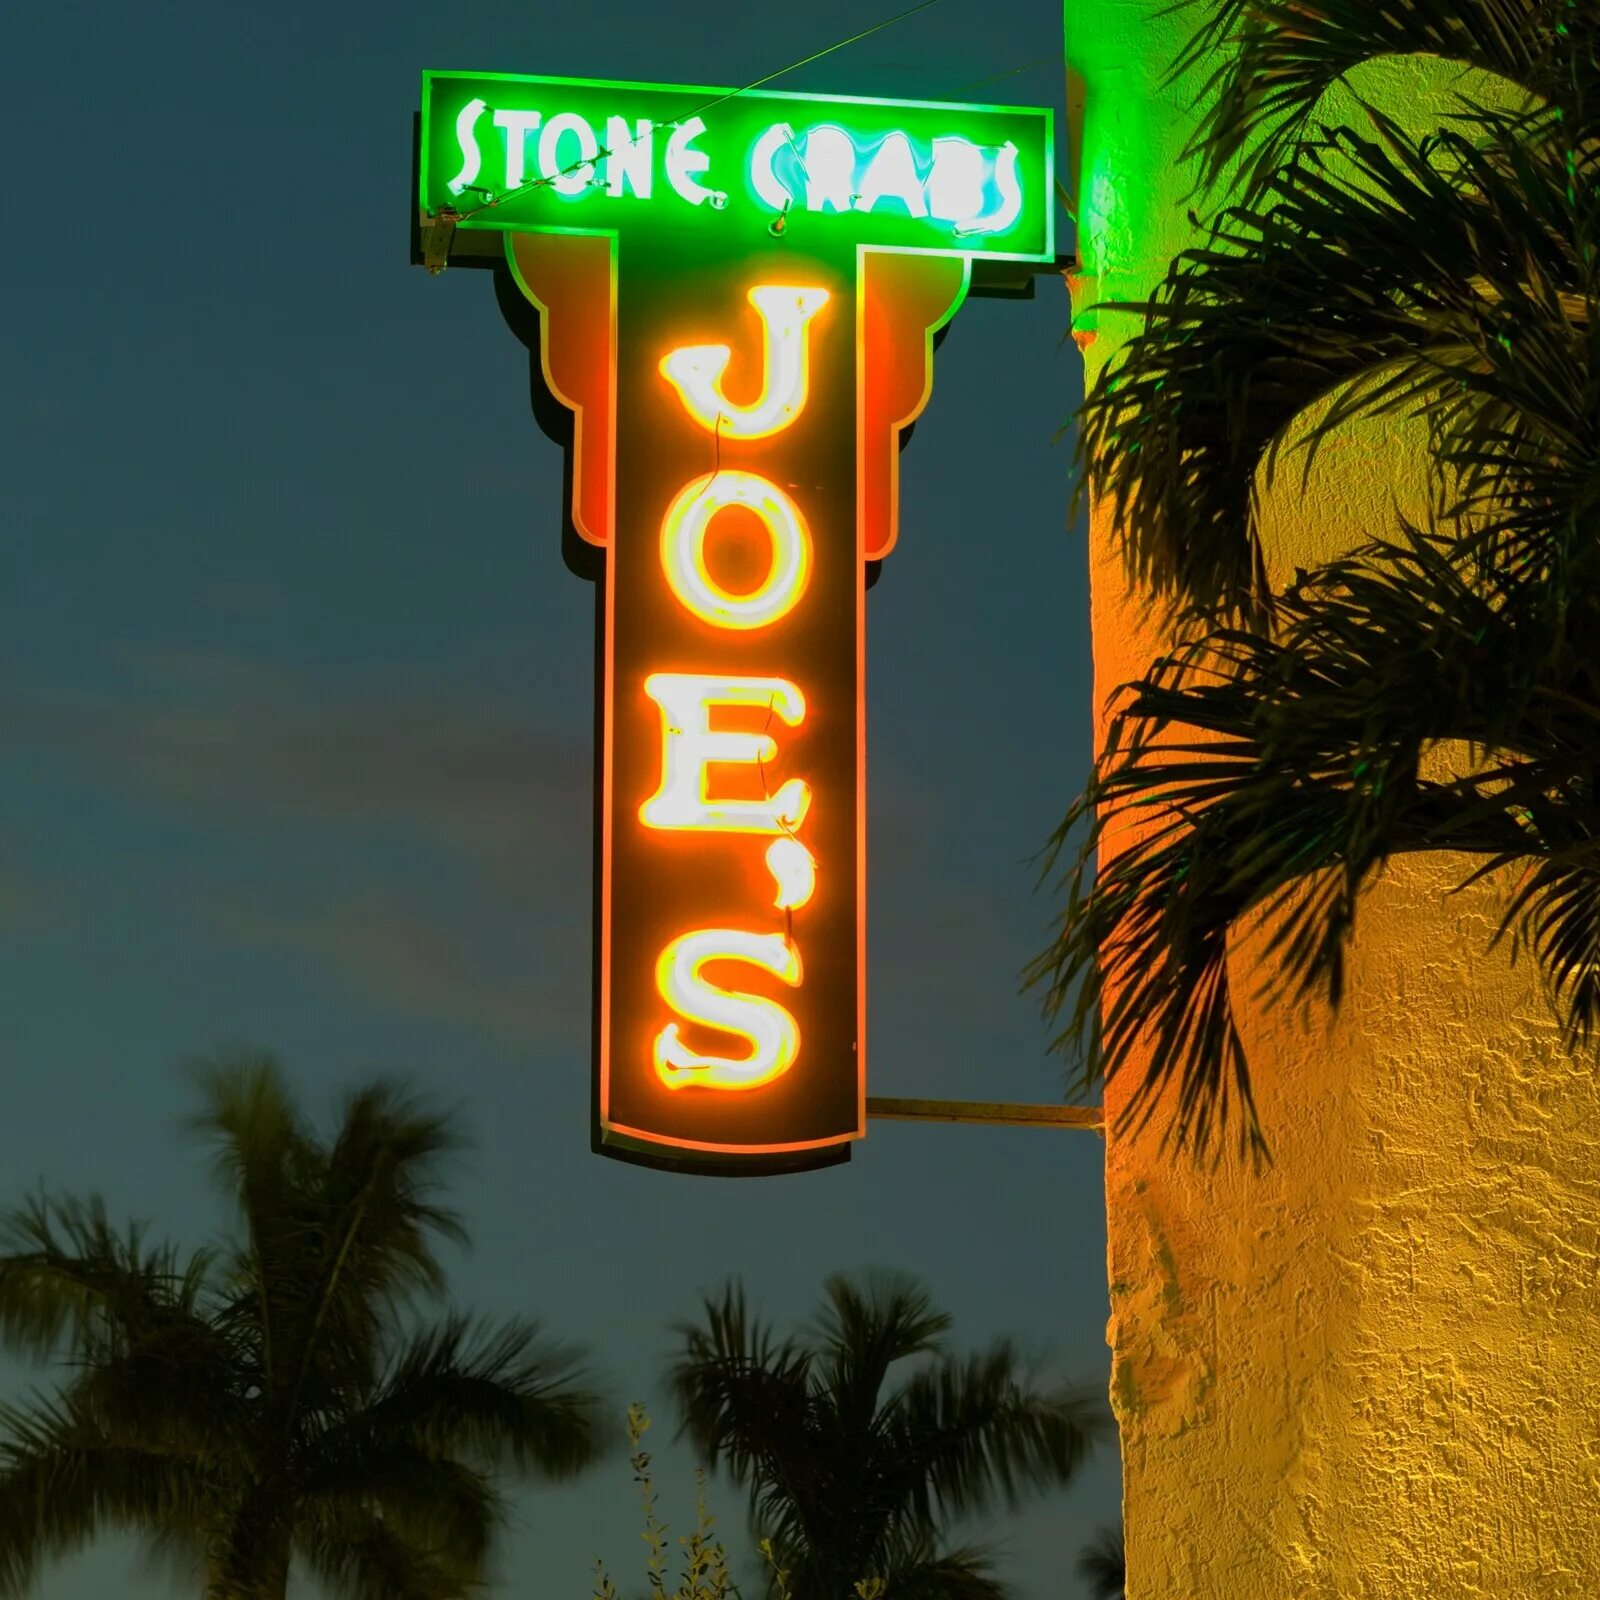 Joe's Майами. Joes Crab Miami. Ресторан в Маями Бич Joe's Stone Crab. Майами Бич надпись.